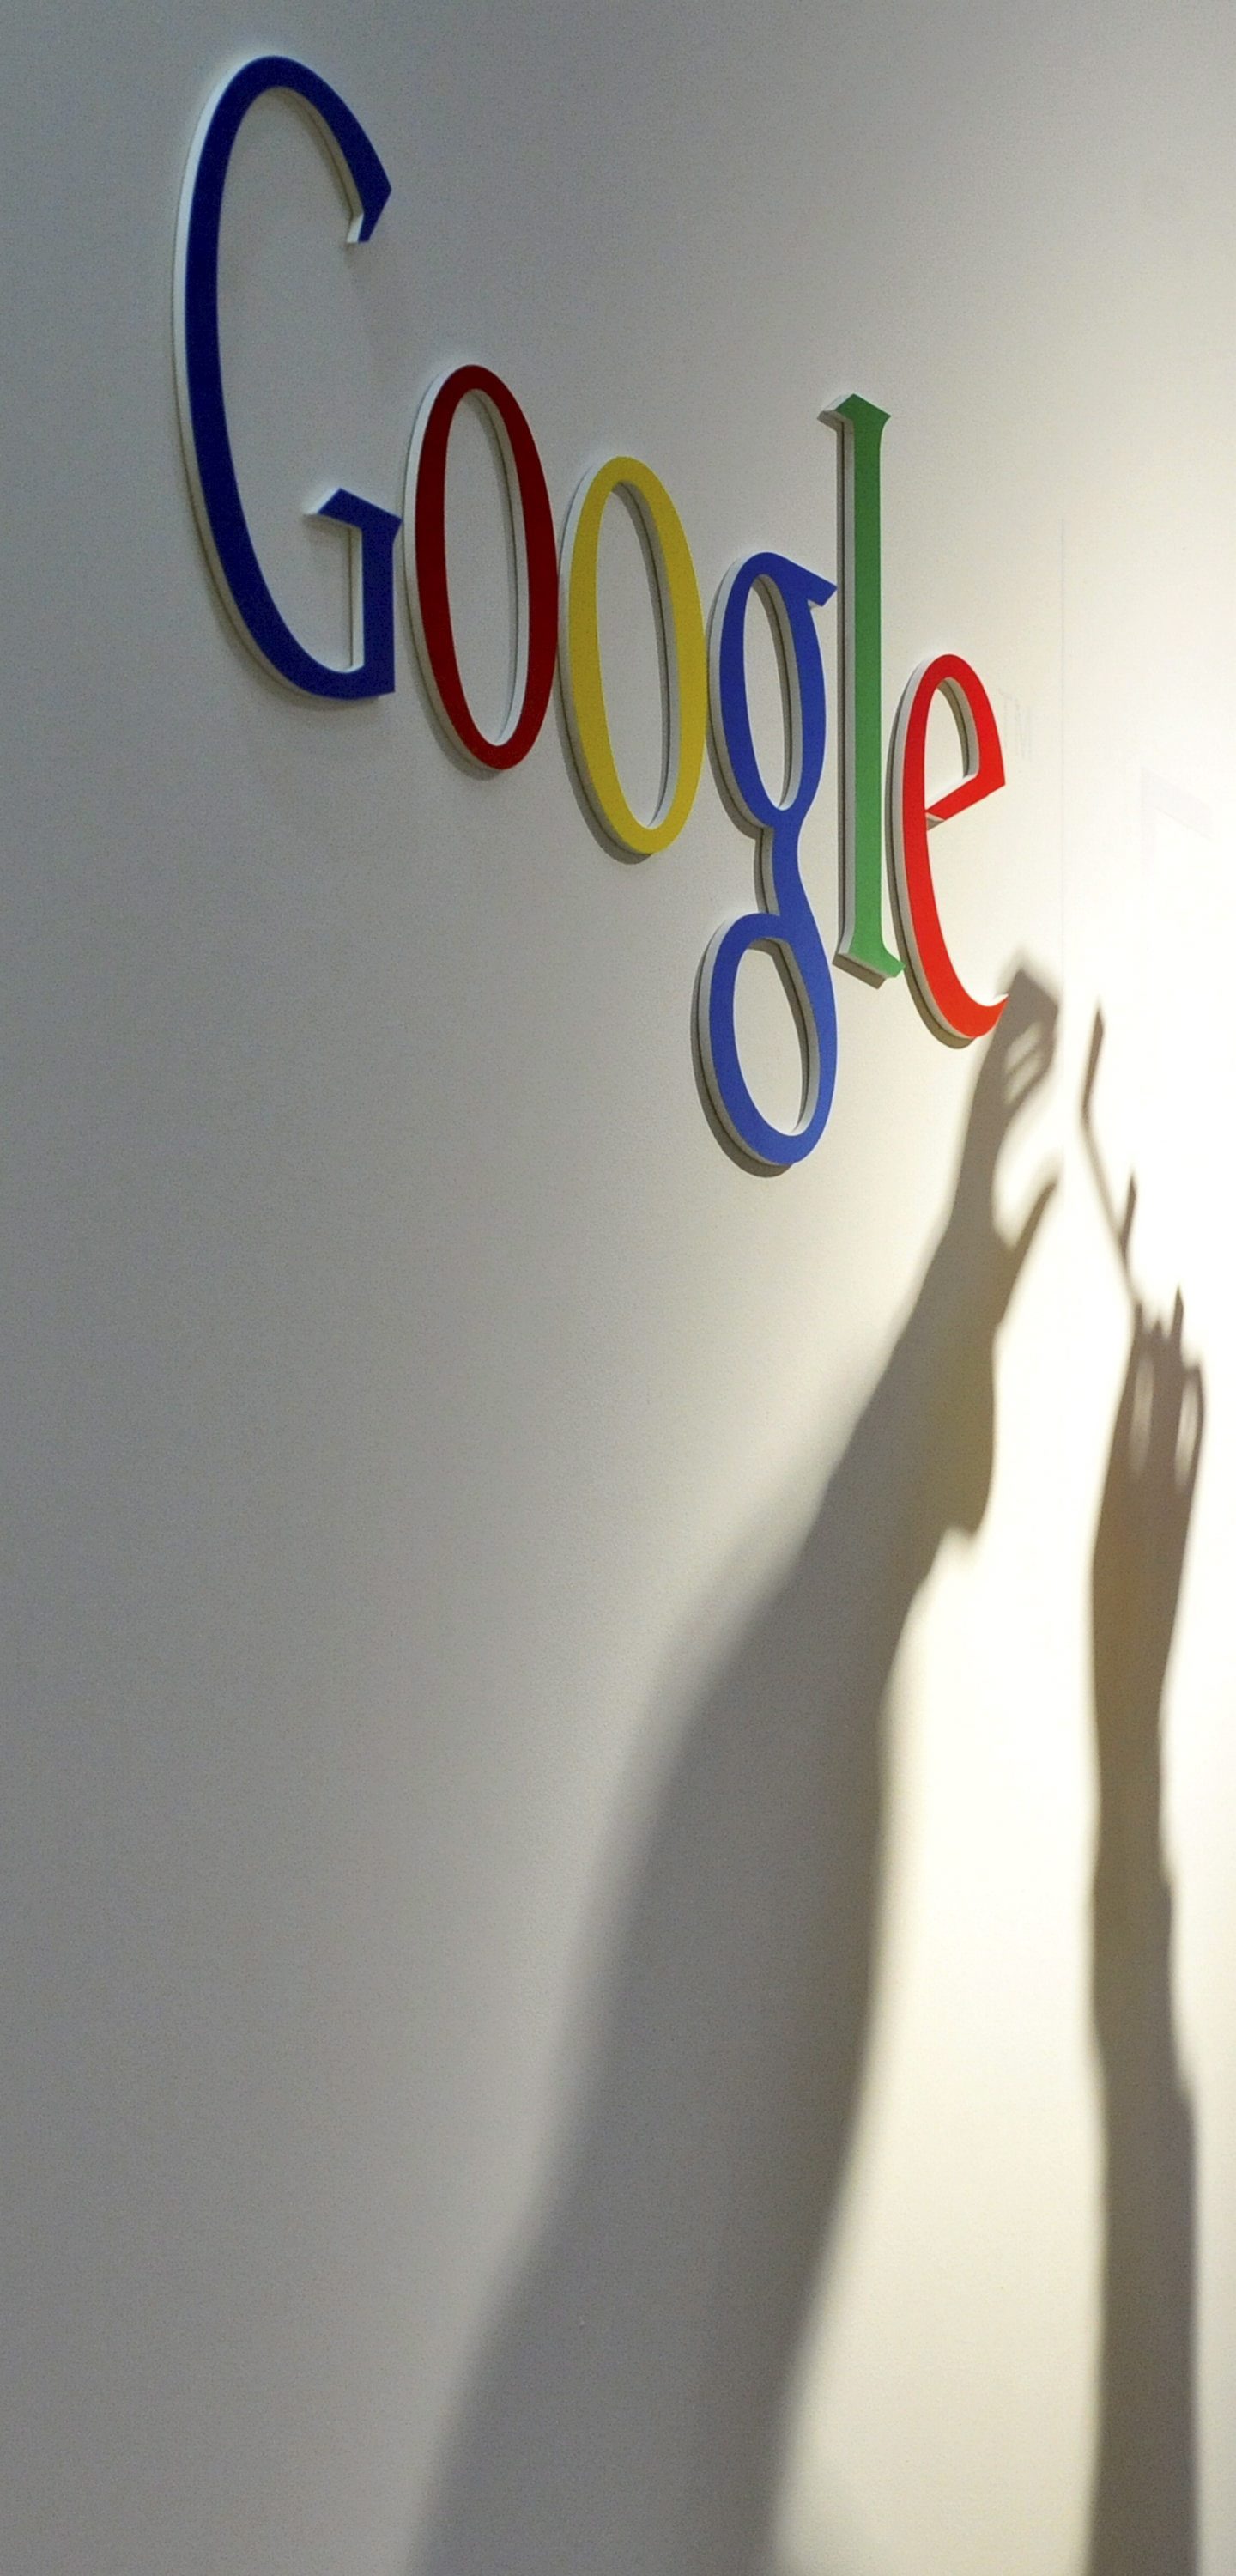 Google иска реформа в патентната система